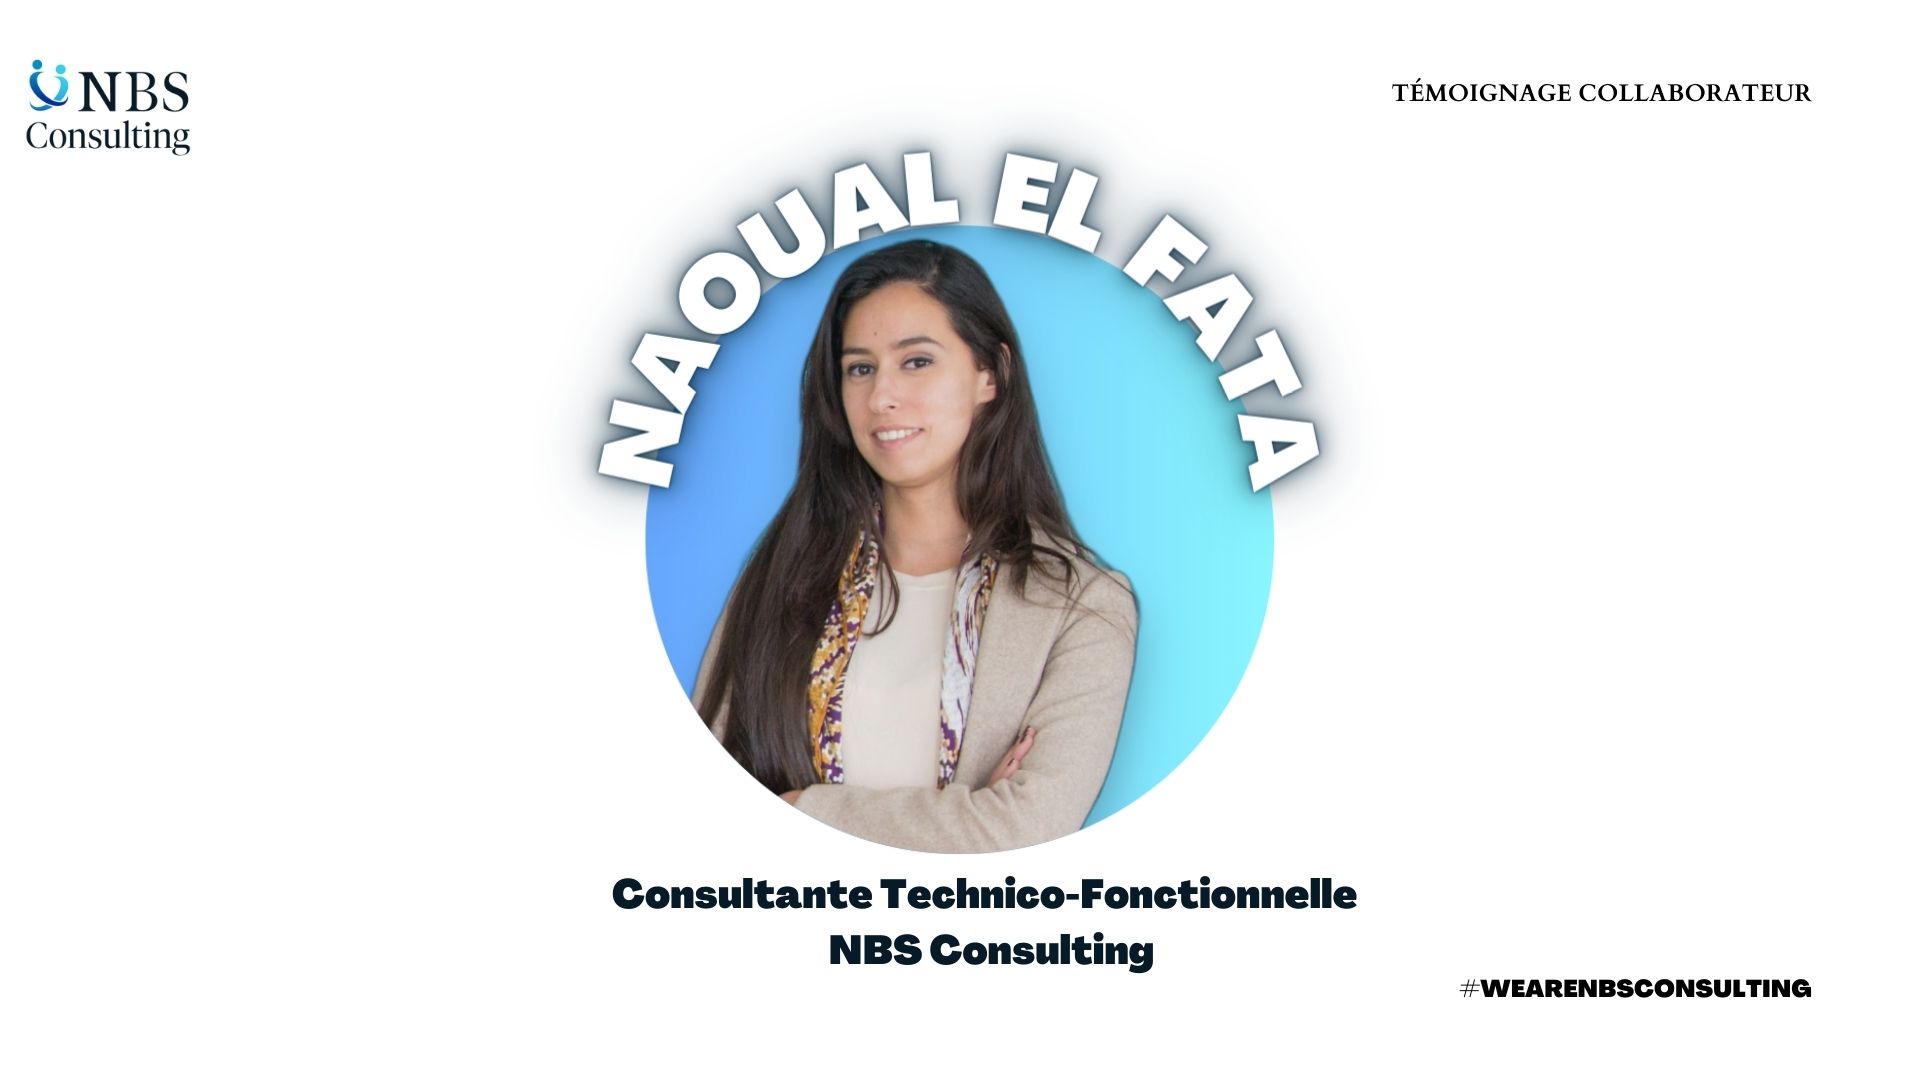 NAOUAL EL FATA - Consultante Technico-Fonctionnelle | Le témoignage du collaborateur | NBS Consulting